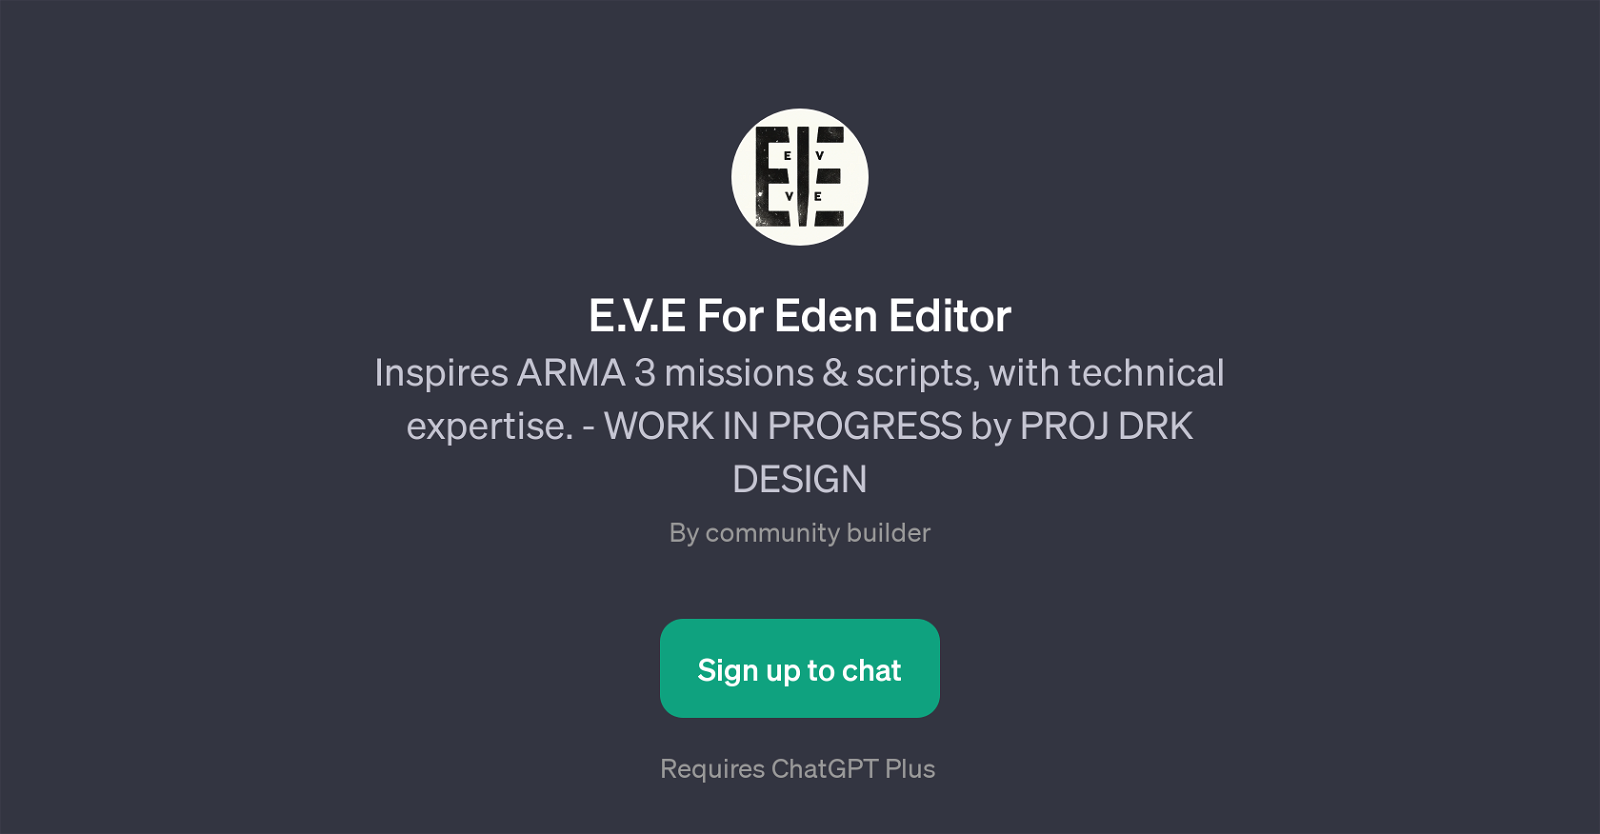 E.V.E For Eden Editor website